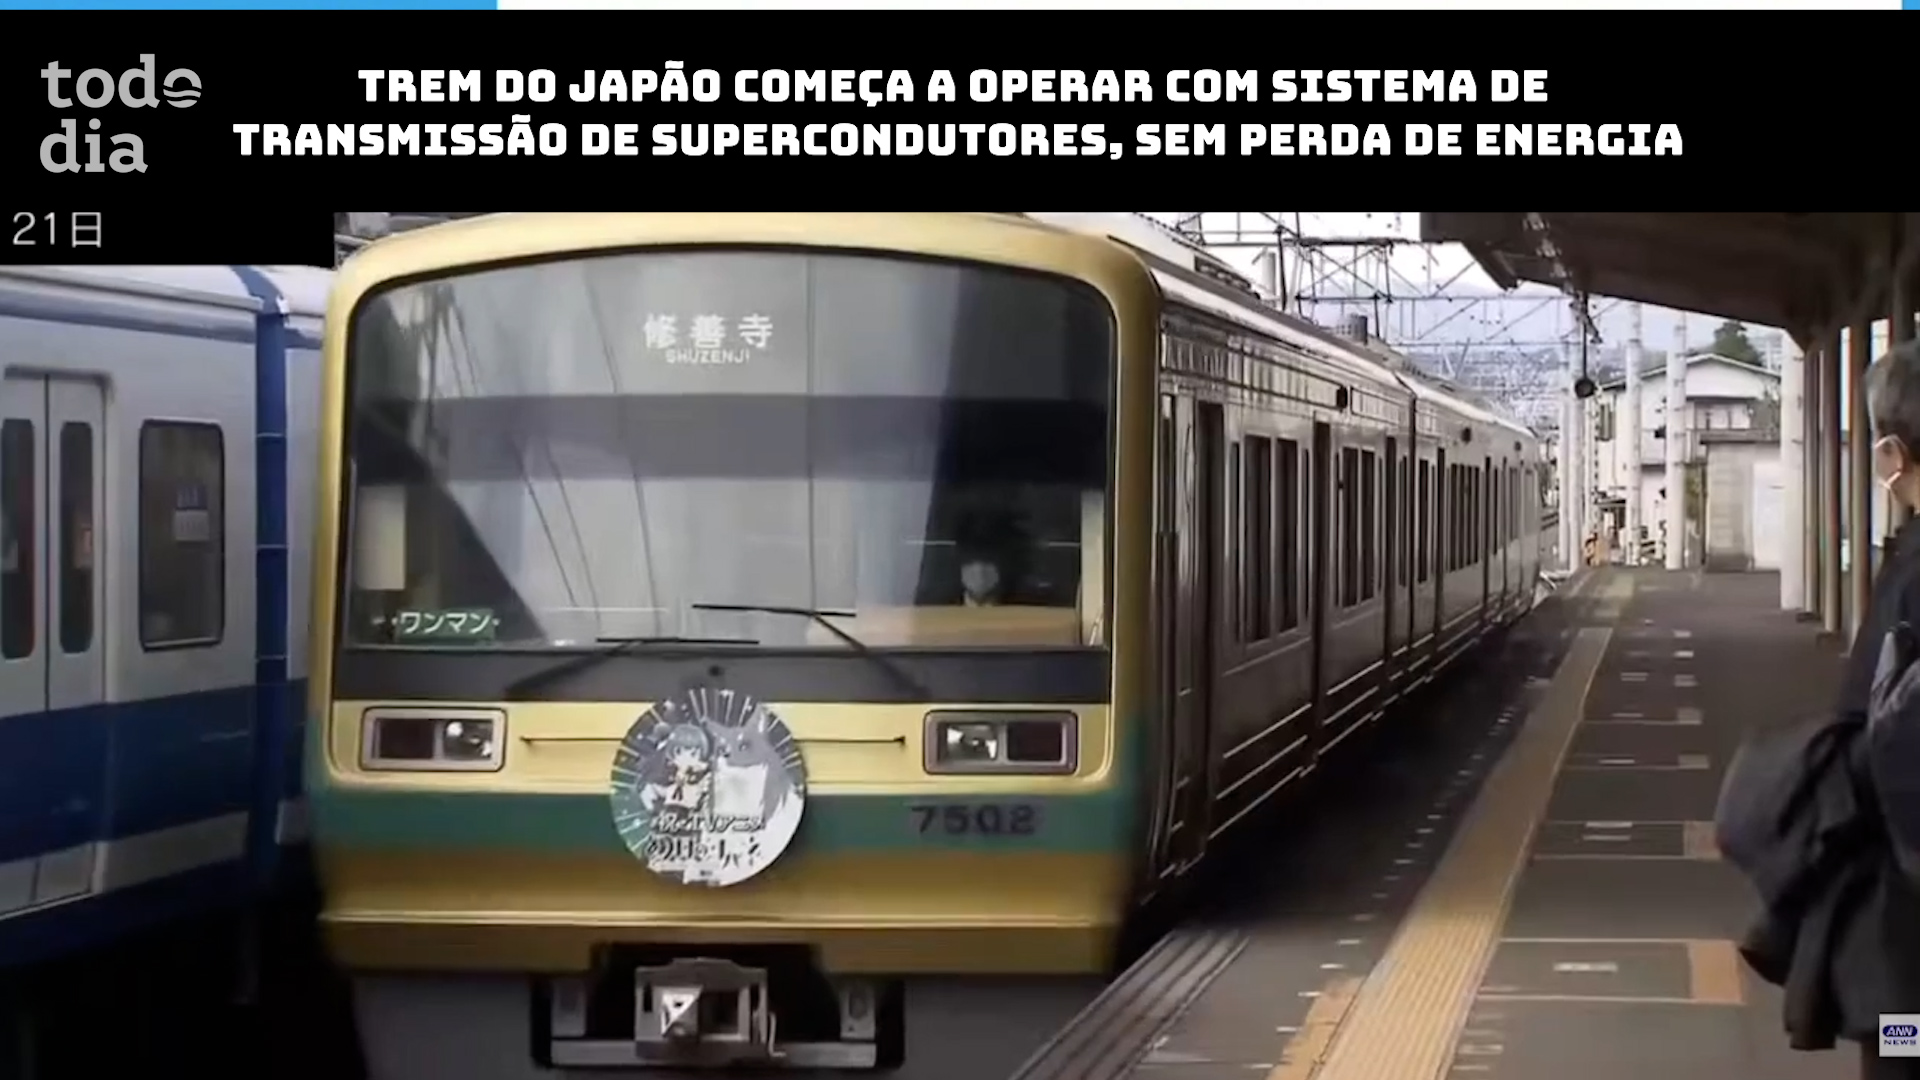 Trem do Japão começa a operar com sistema de transmissão de supercondutores, sem perda de energia